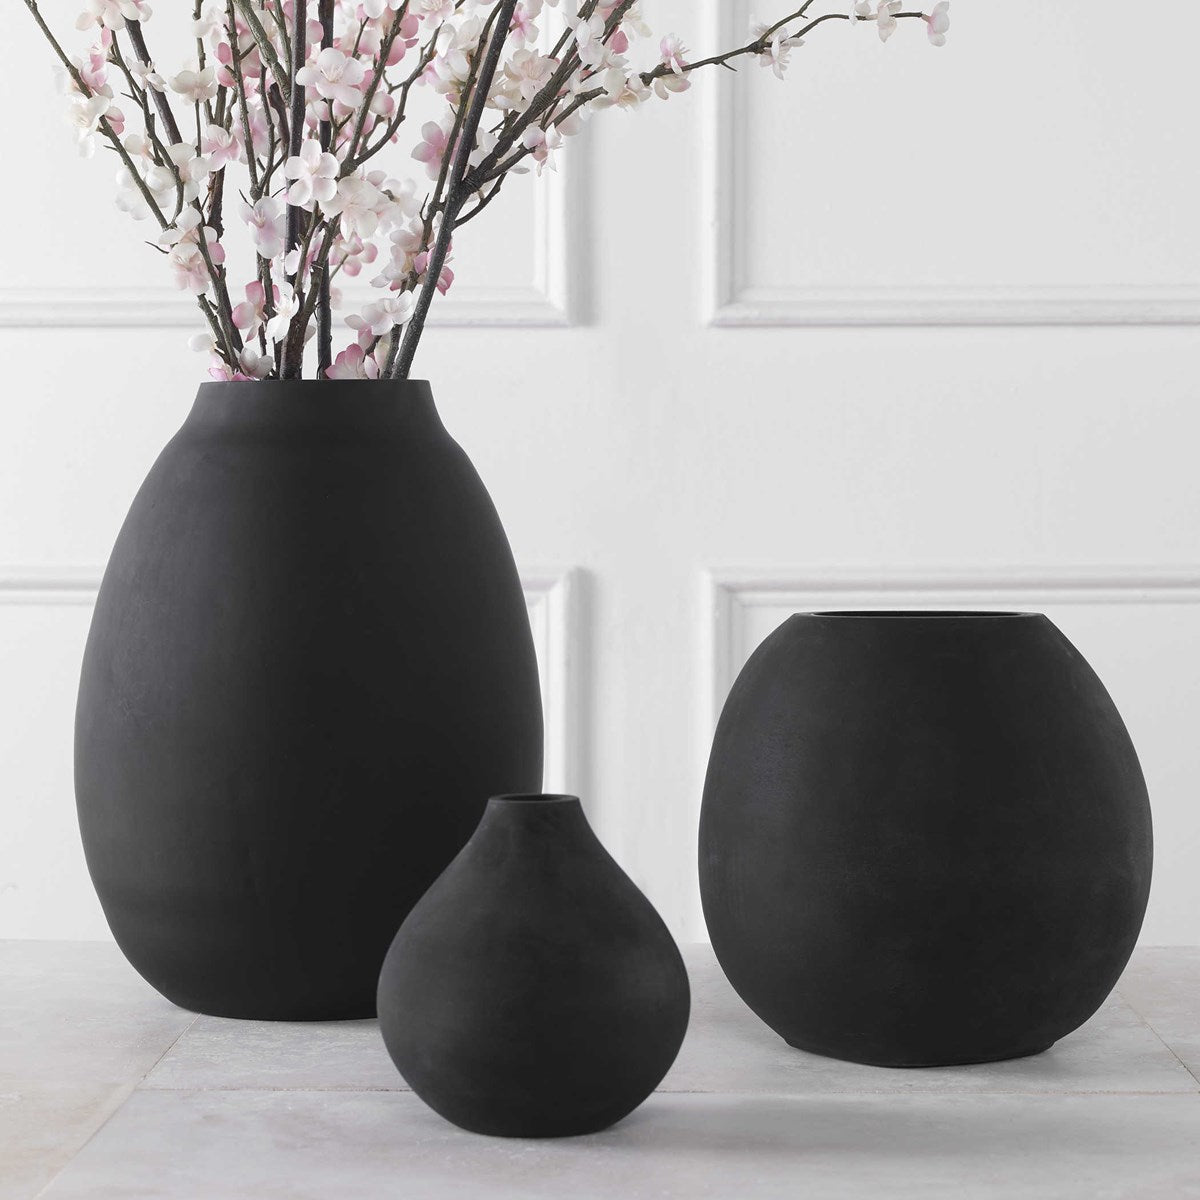 Hearth Vases s/3